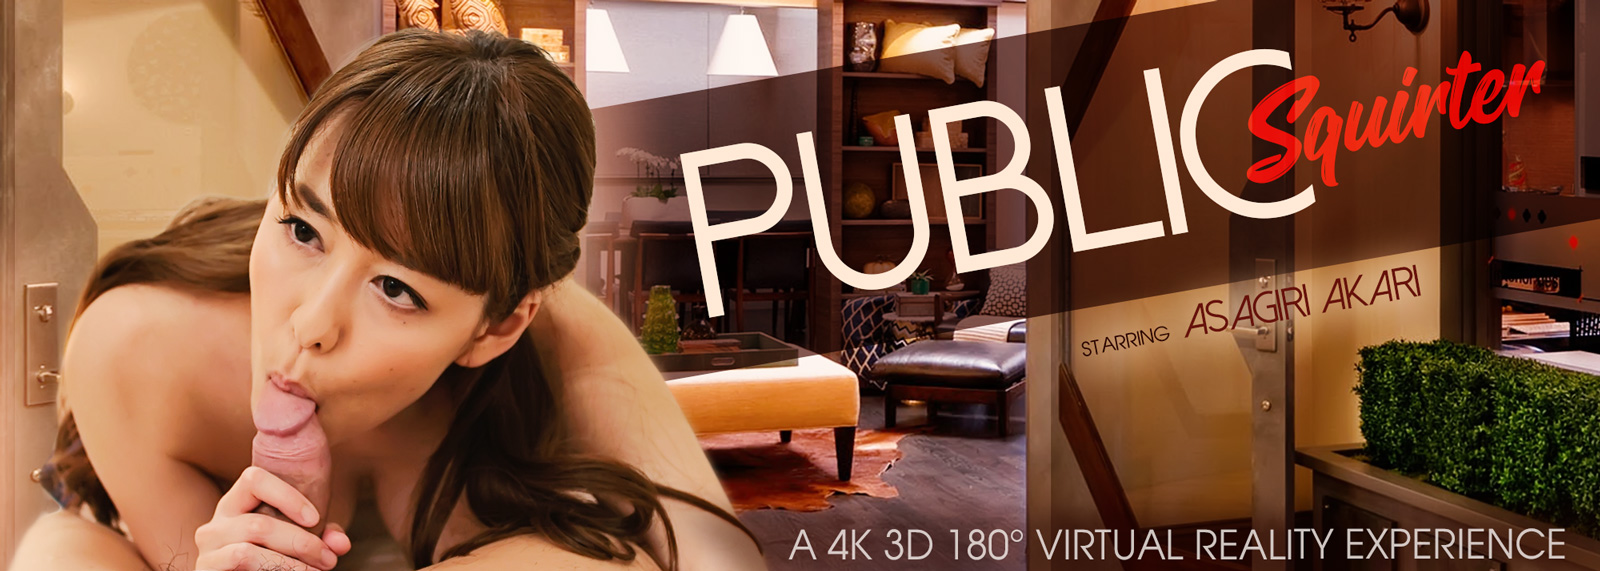 3d Little Star - Public Squirter with Asagiri Akari VR Porn Video in 4K-8K | VR Bangers